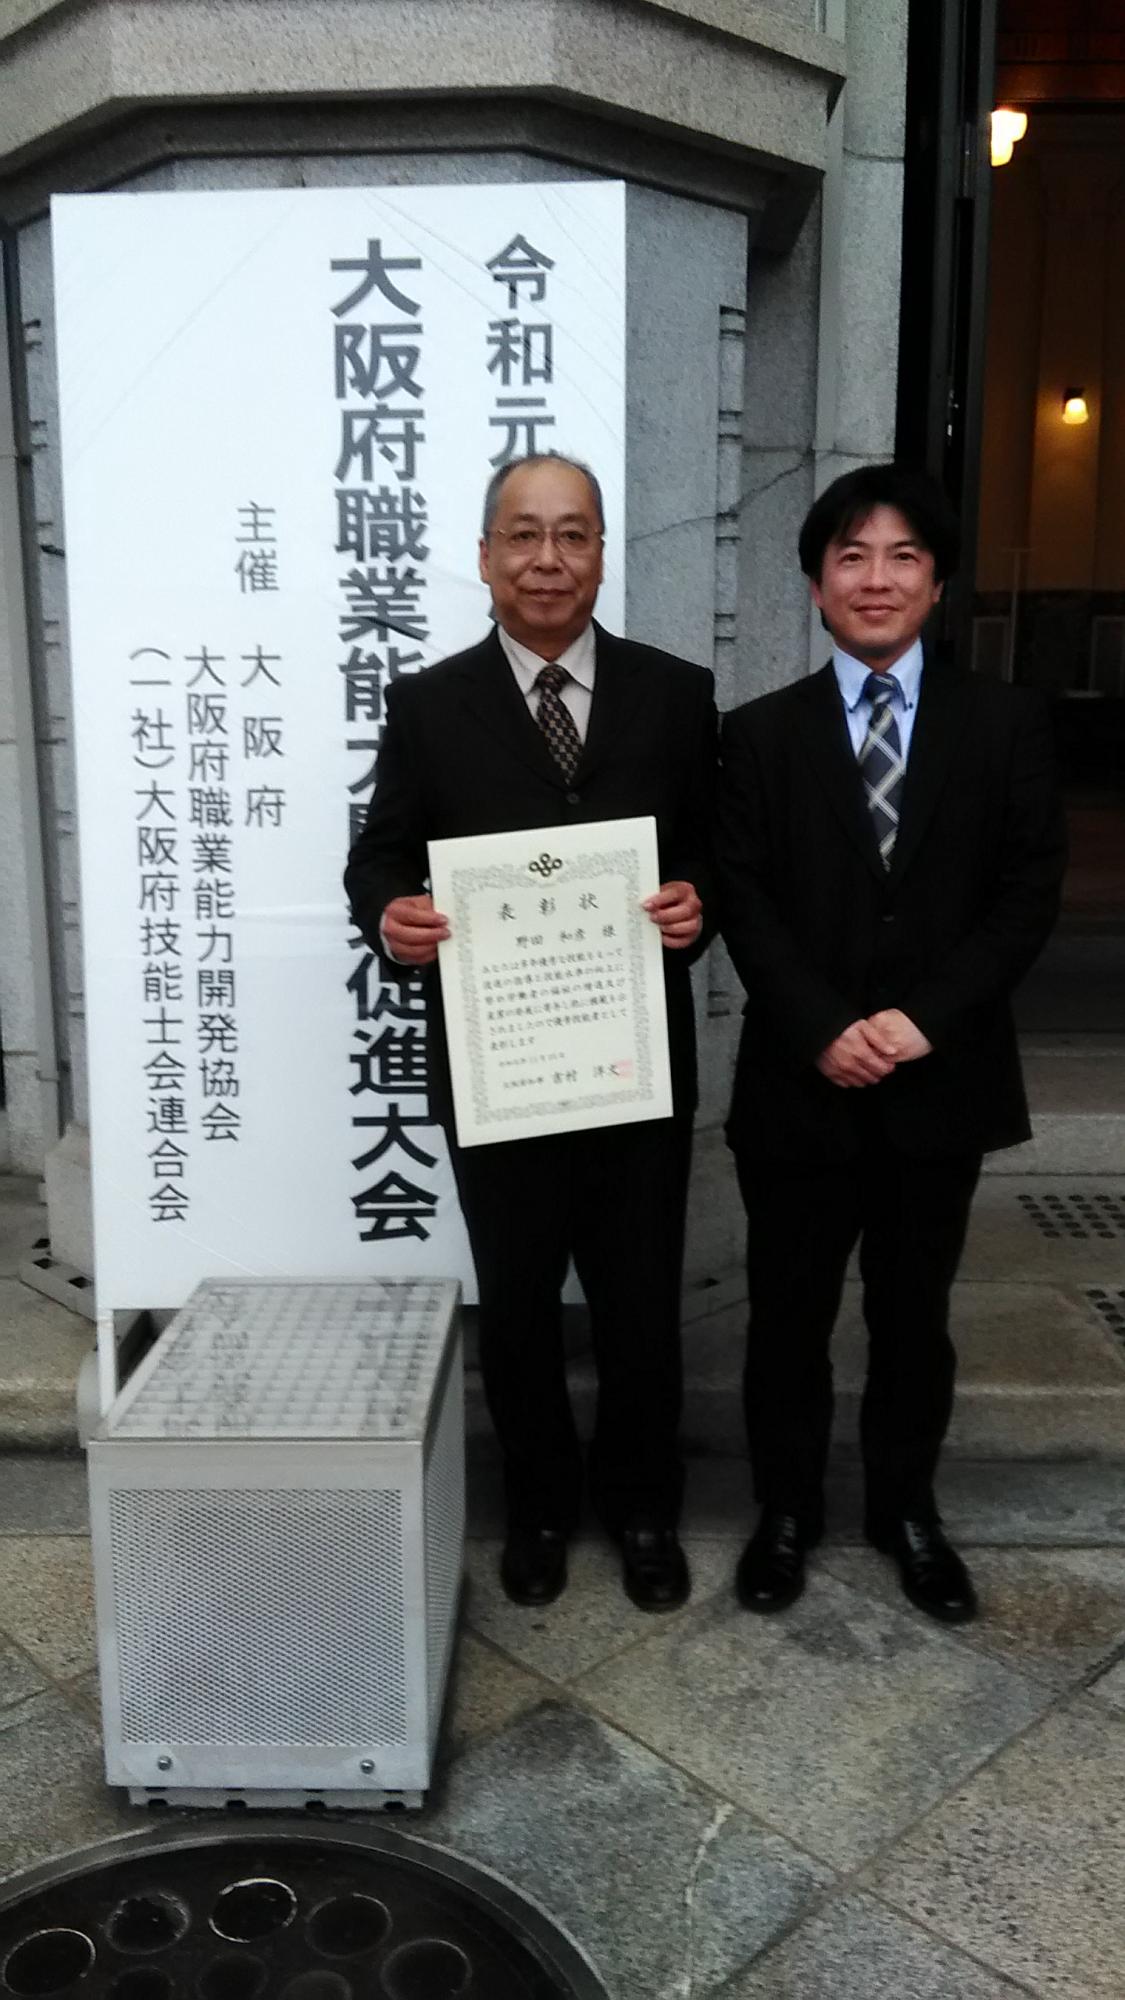 表彰を受けた智頭電機株式会社の野田さん（左）と同大会で技能検定推進に貢献したとして感謝状を受けた同社の原田さん（右）